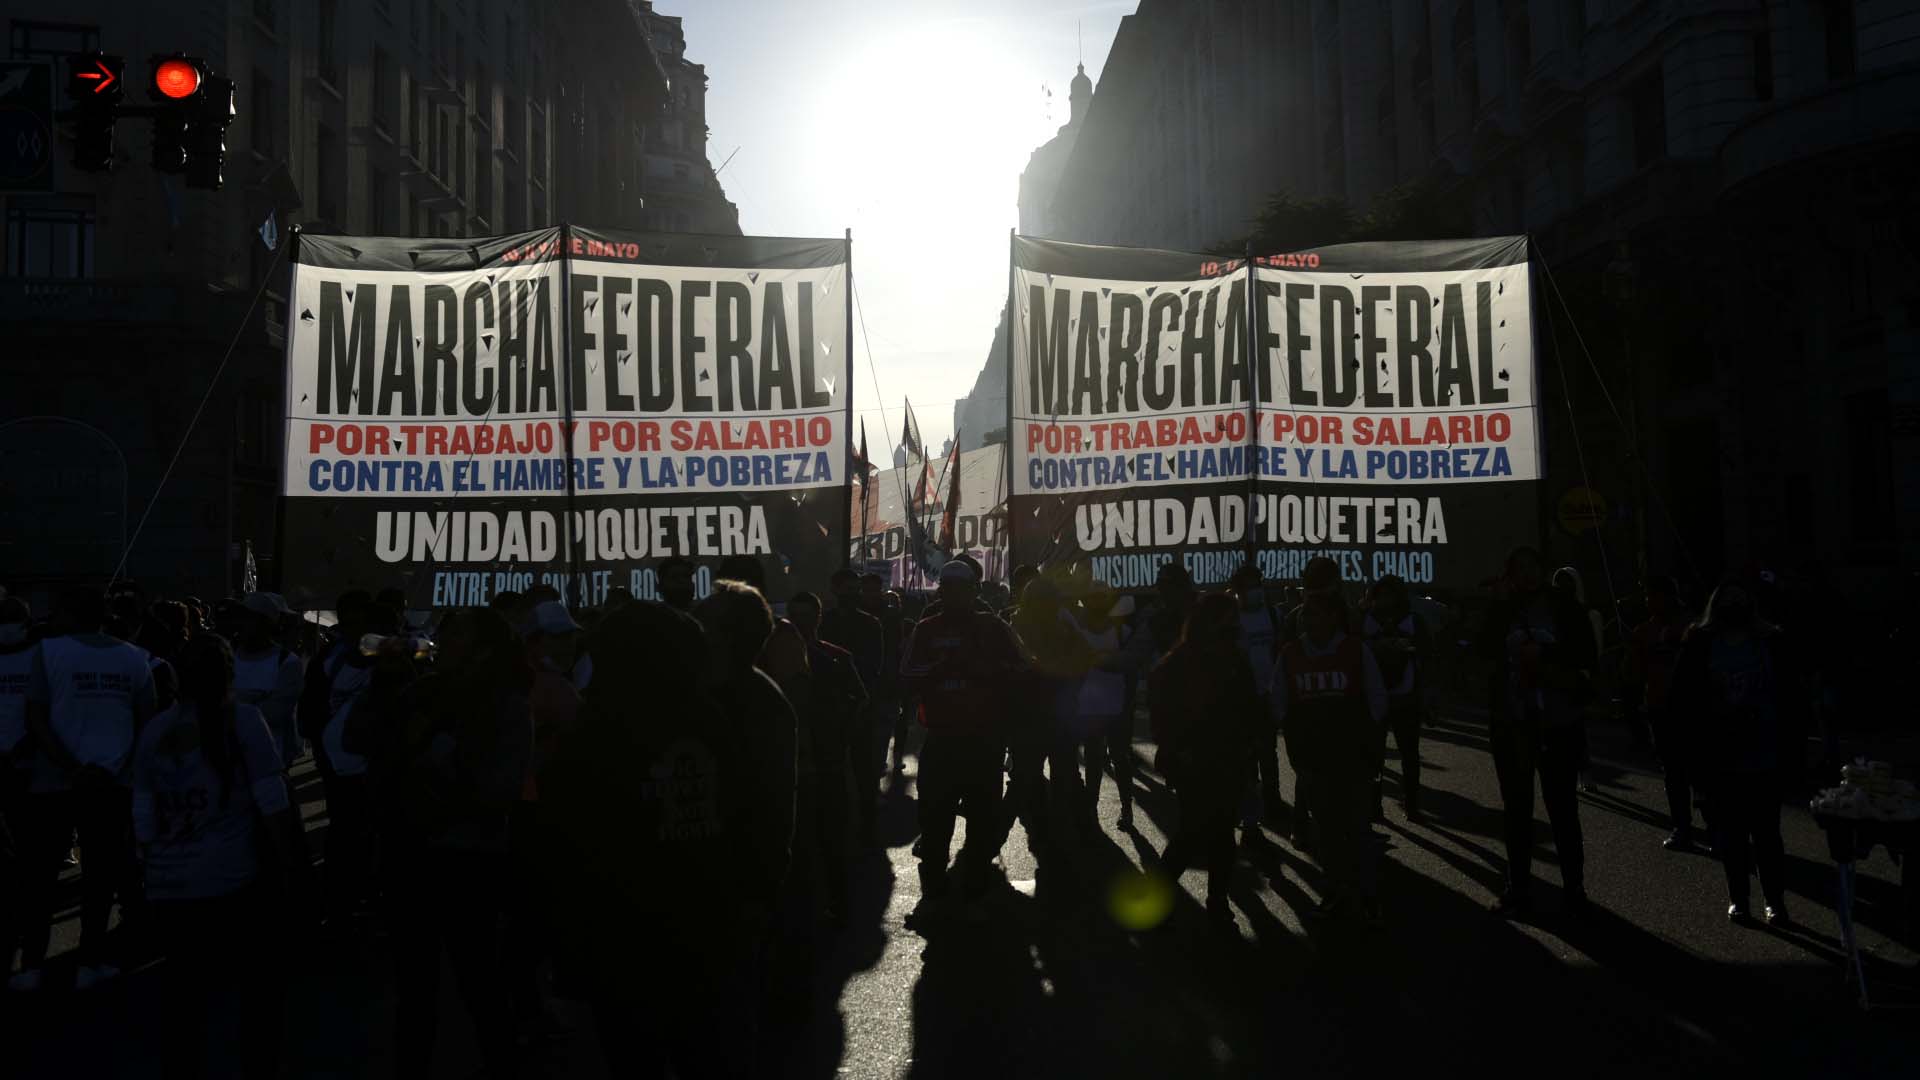 "La consigna que concentra los reclamos de la marcha federal es ‘por trabajo y por salario, contra el hambre y la pobreza”, dicen sus dirigentes (Gustavo Gavotti)